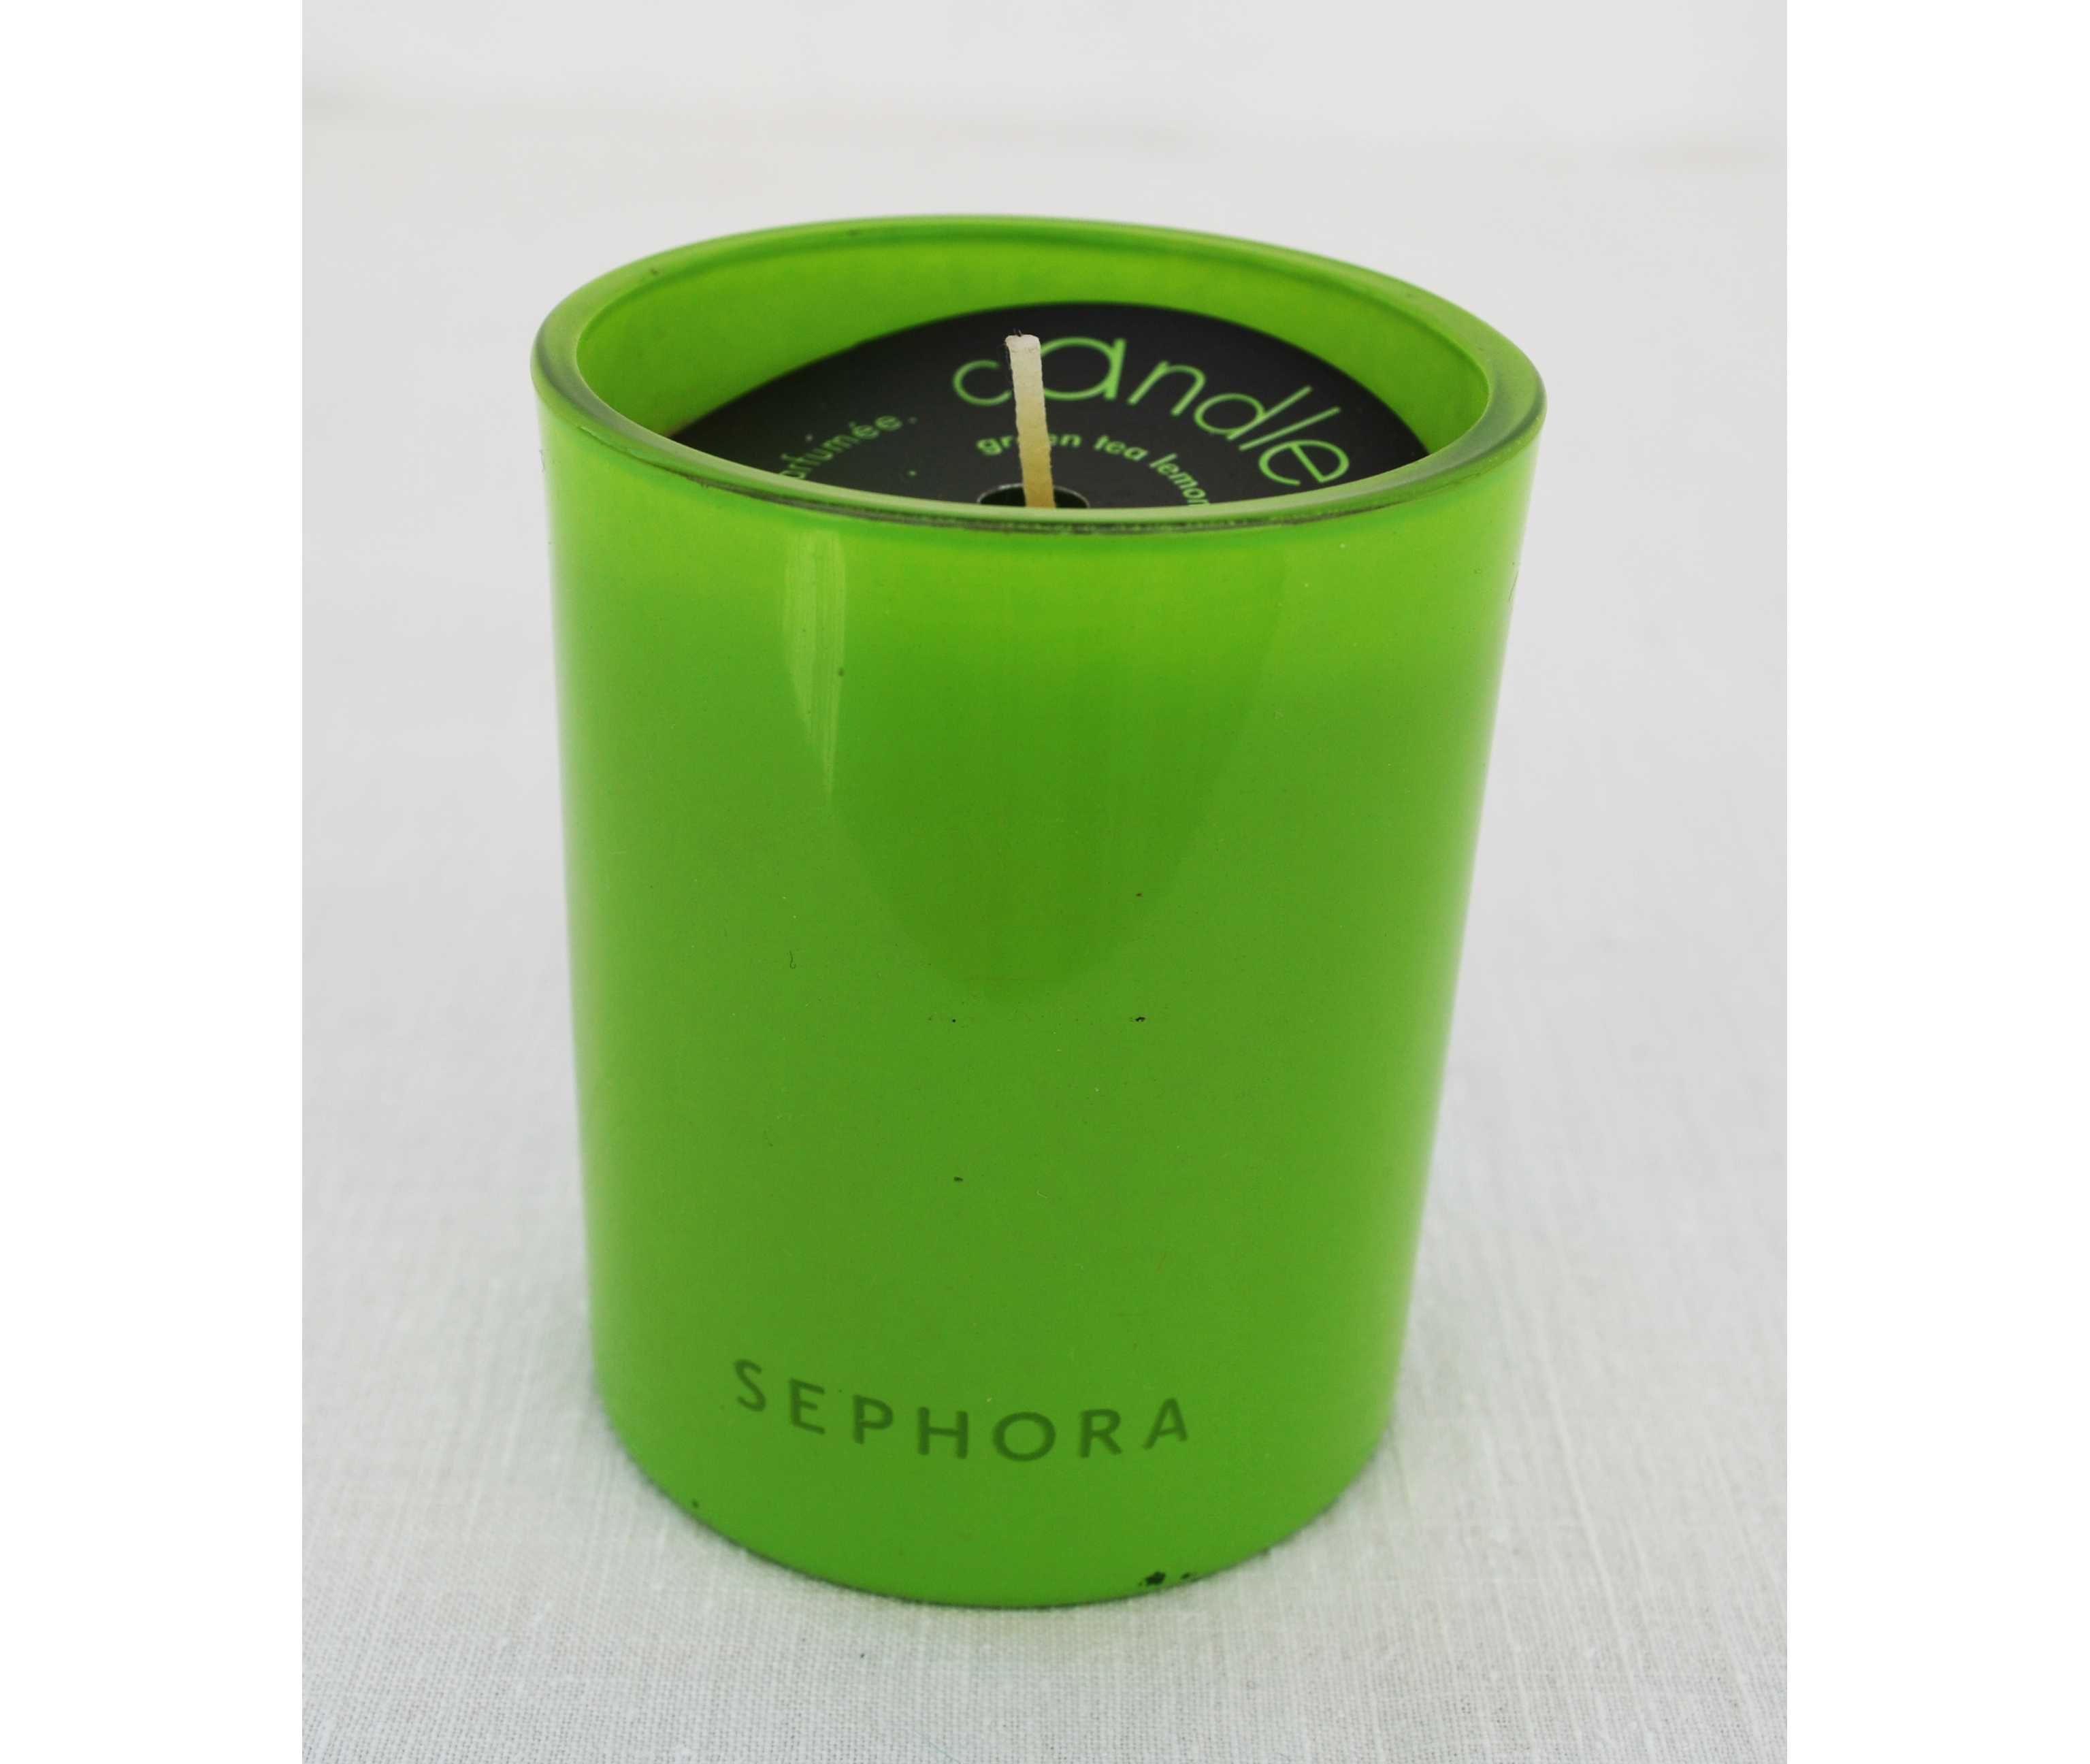 Vela ambientadora Sephora – chá verde limão